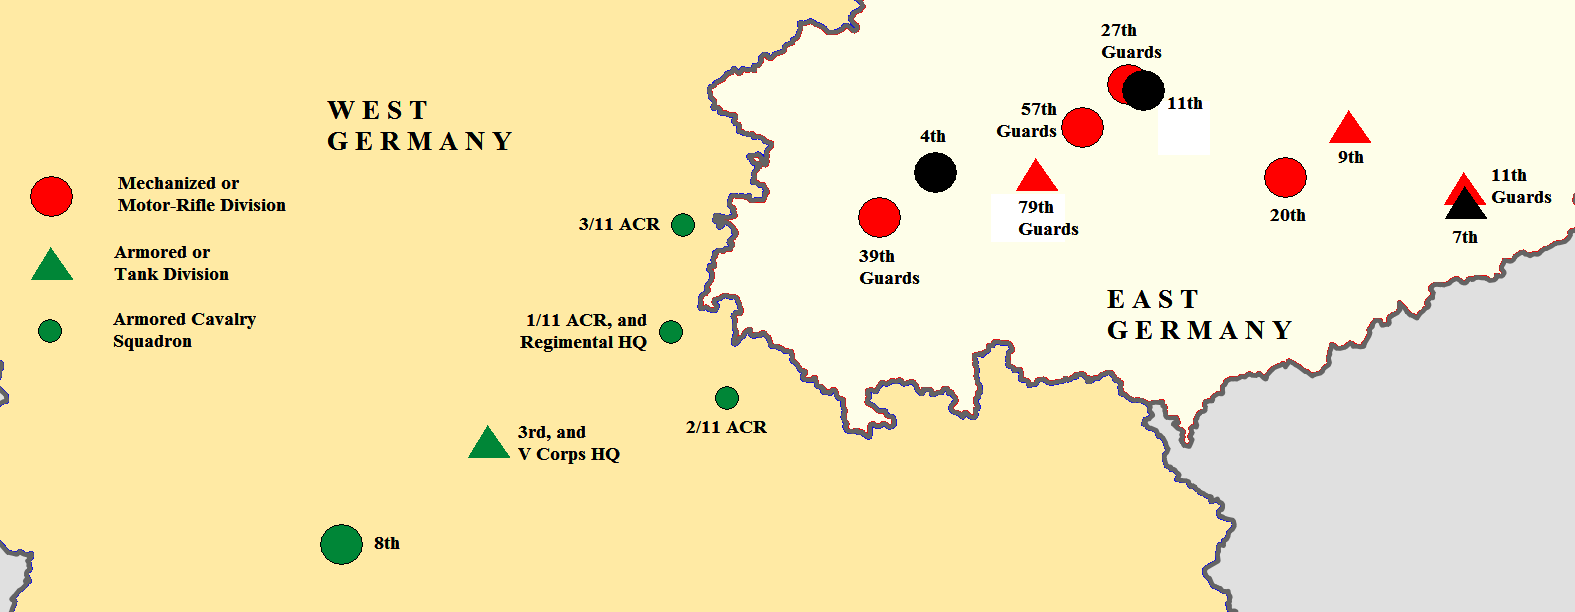 Fulda Gap Maps And Units